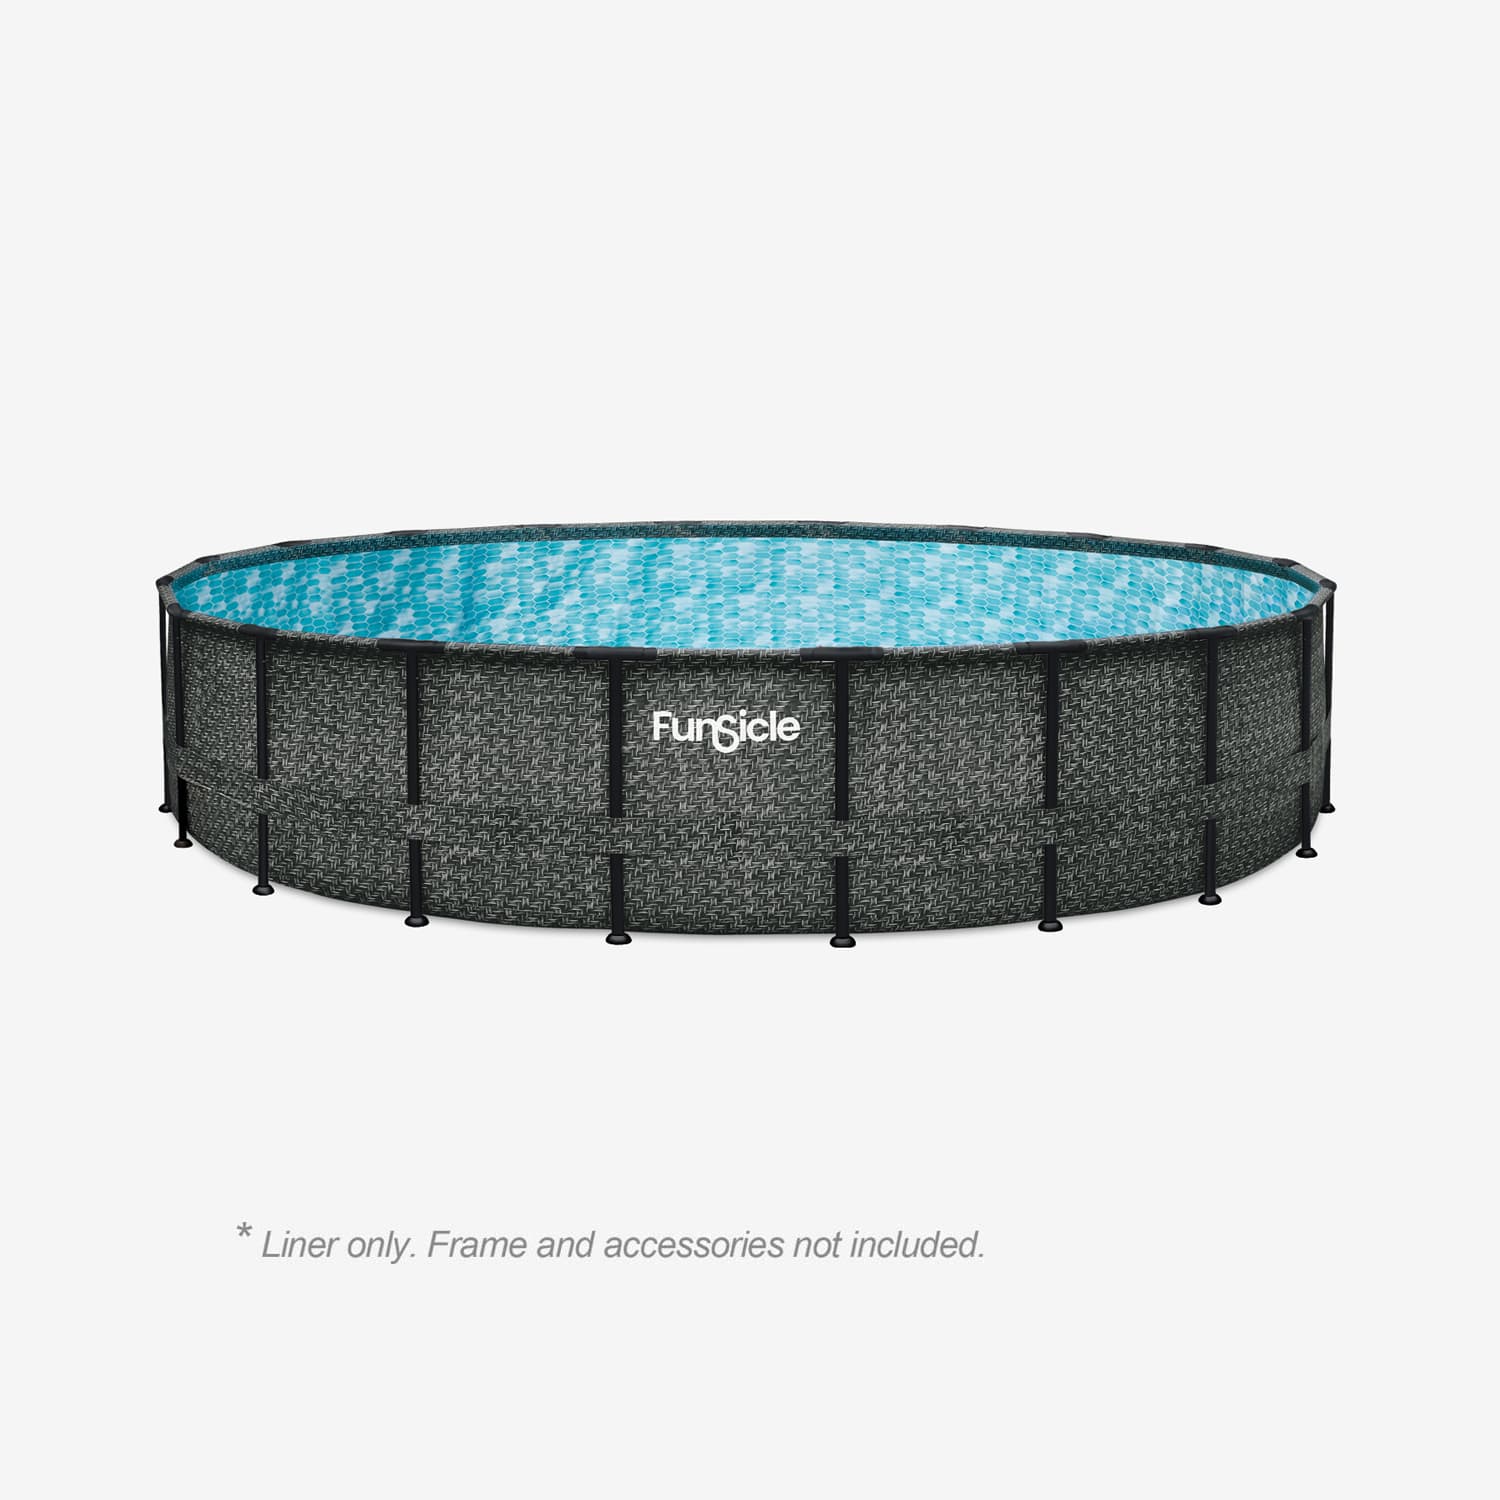 Funsicle 20 ft Oasis Designer Pool Liner – Dark Herringbone